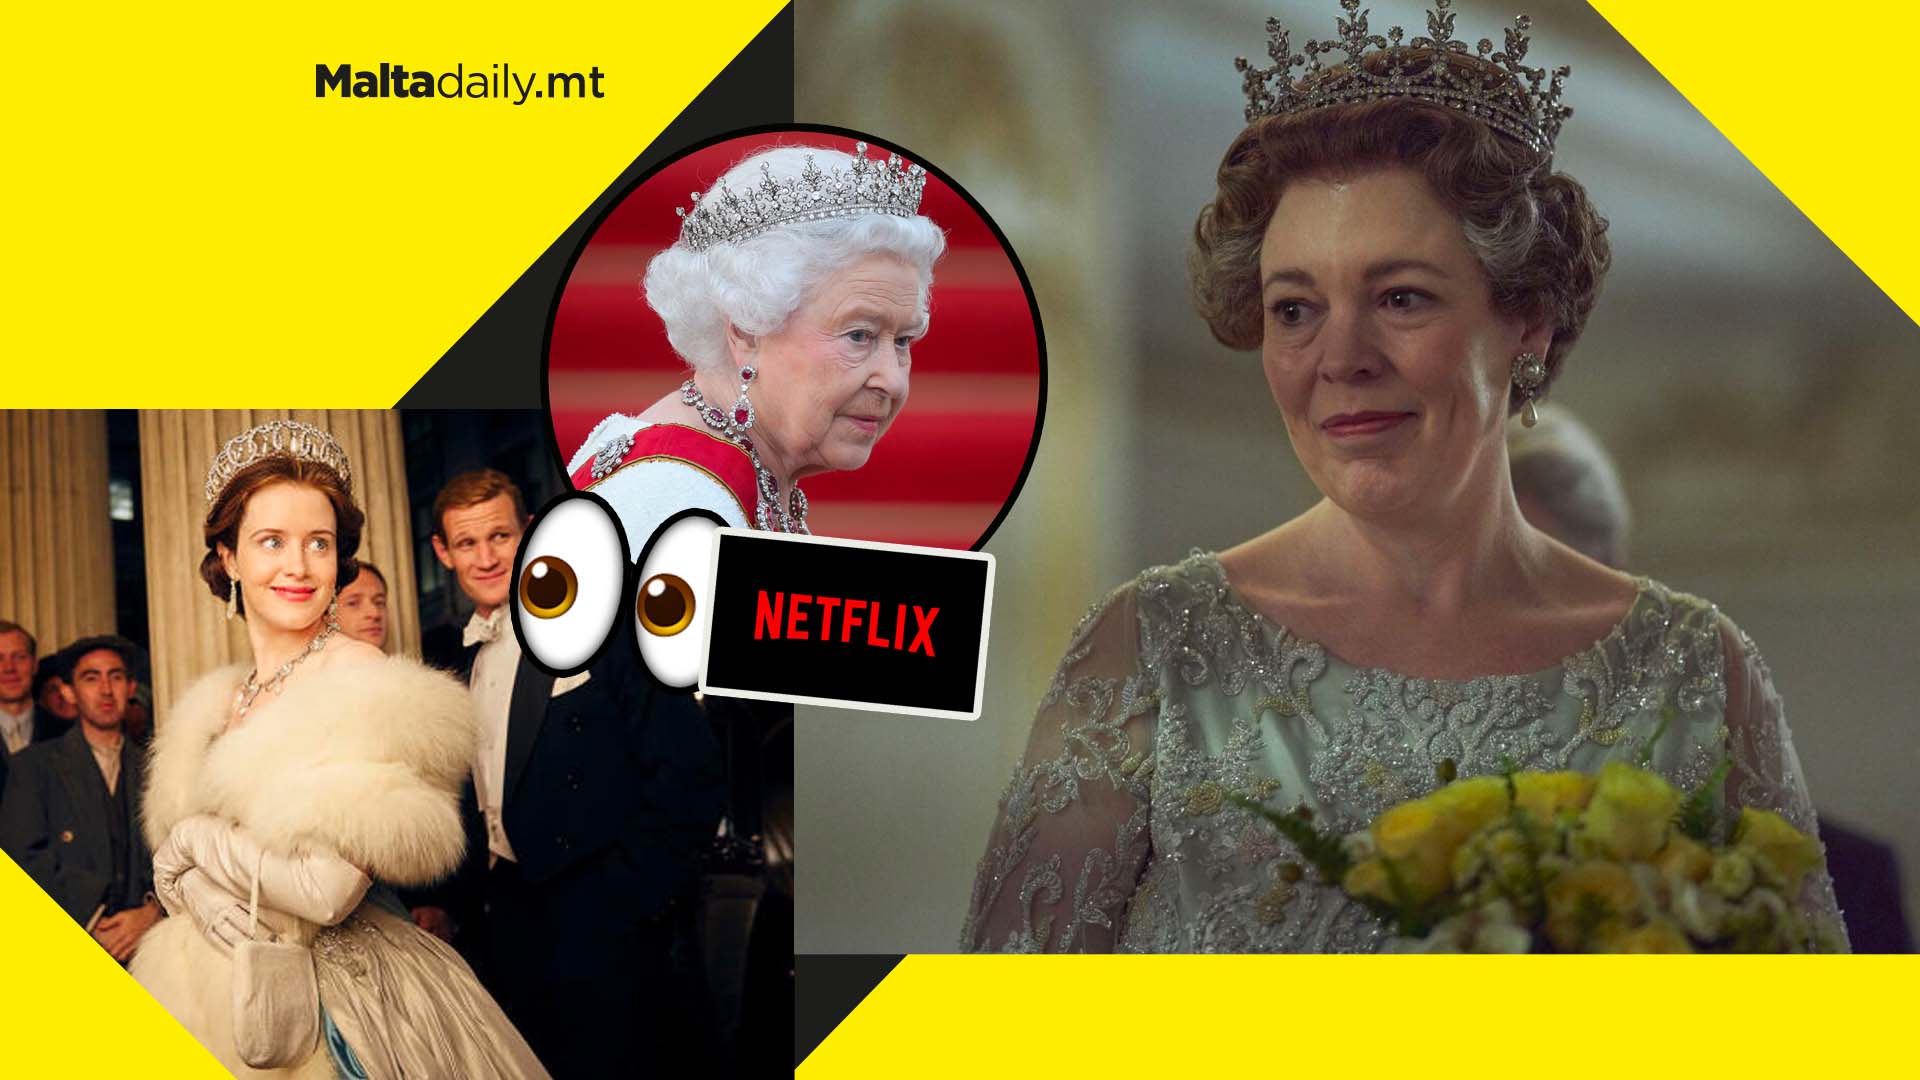 Netflix series ‘The Crown’ trending following Queen Elizabeth’s passing